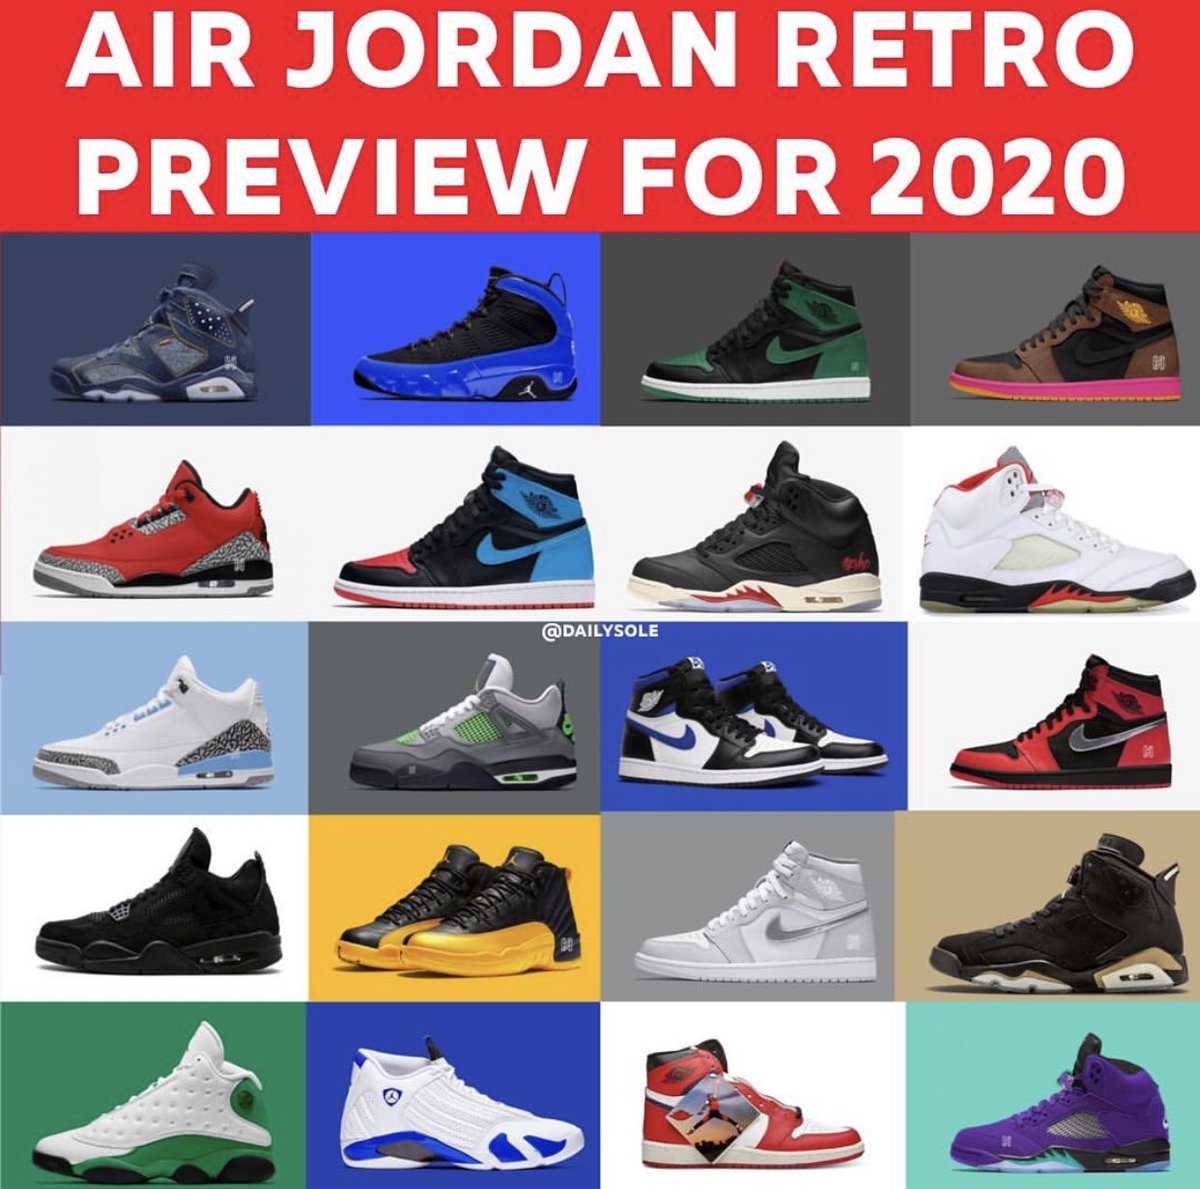 jordans released today 2020